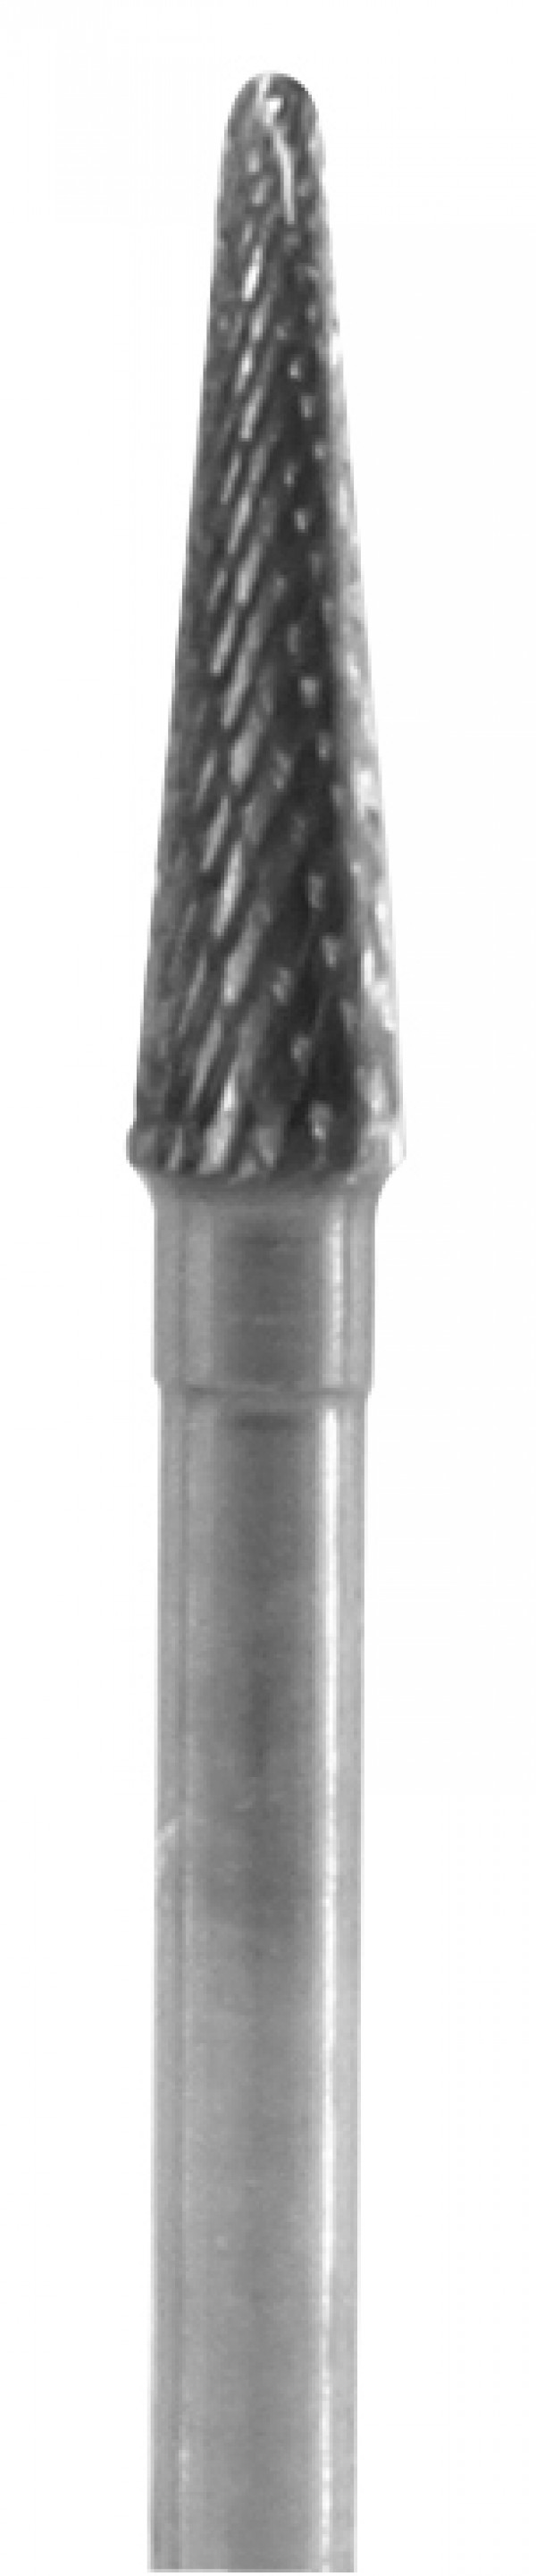 Karbiditerä, kartio hieno ristirihla, vino 3,1 mm